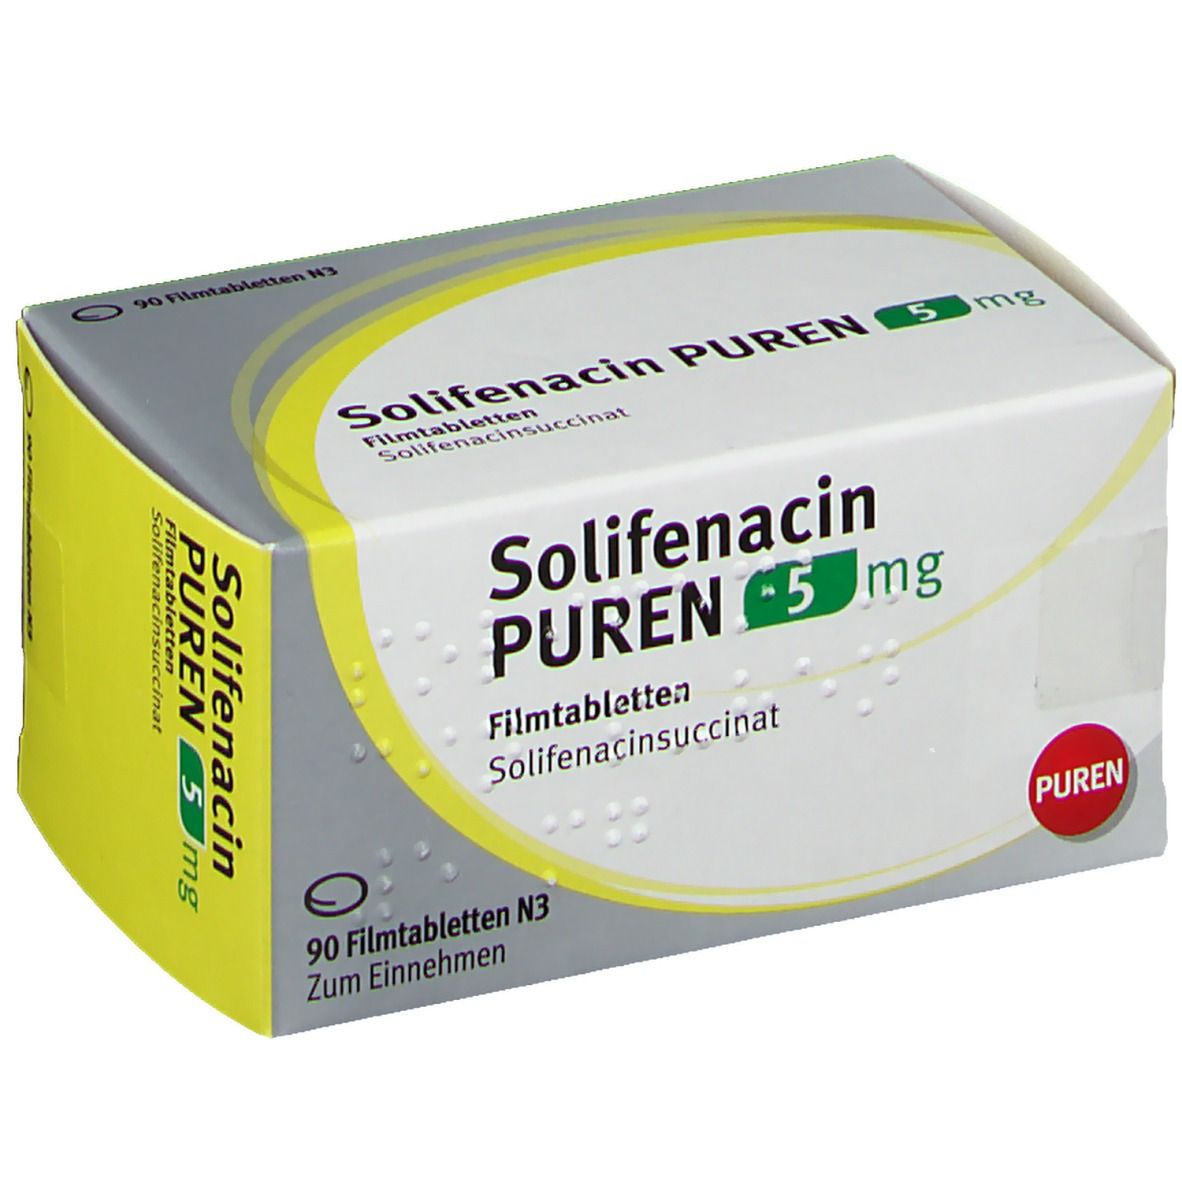 Solifenacin PUREN 5 mg